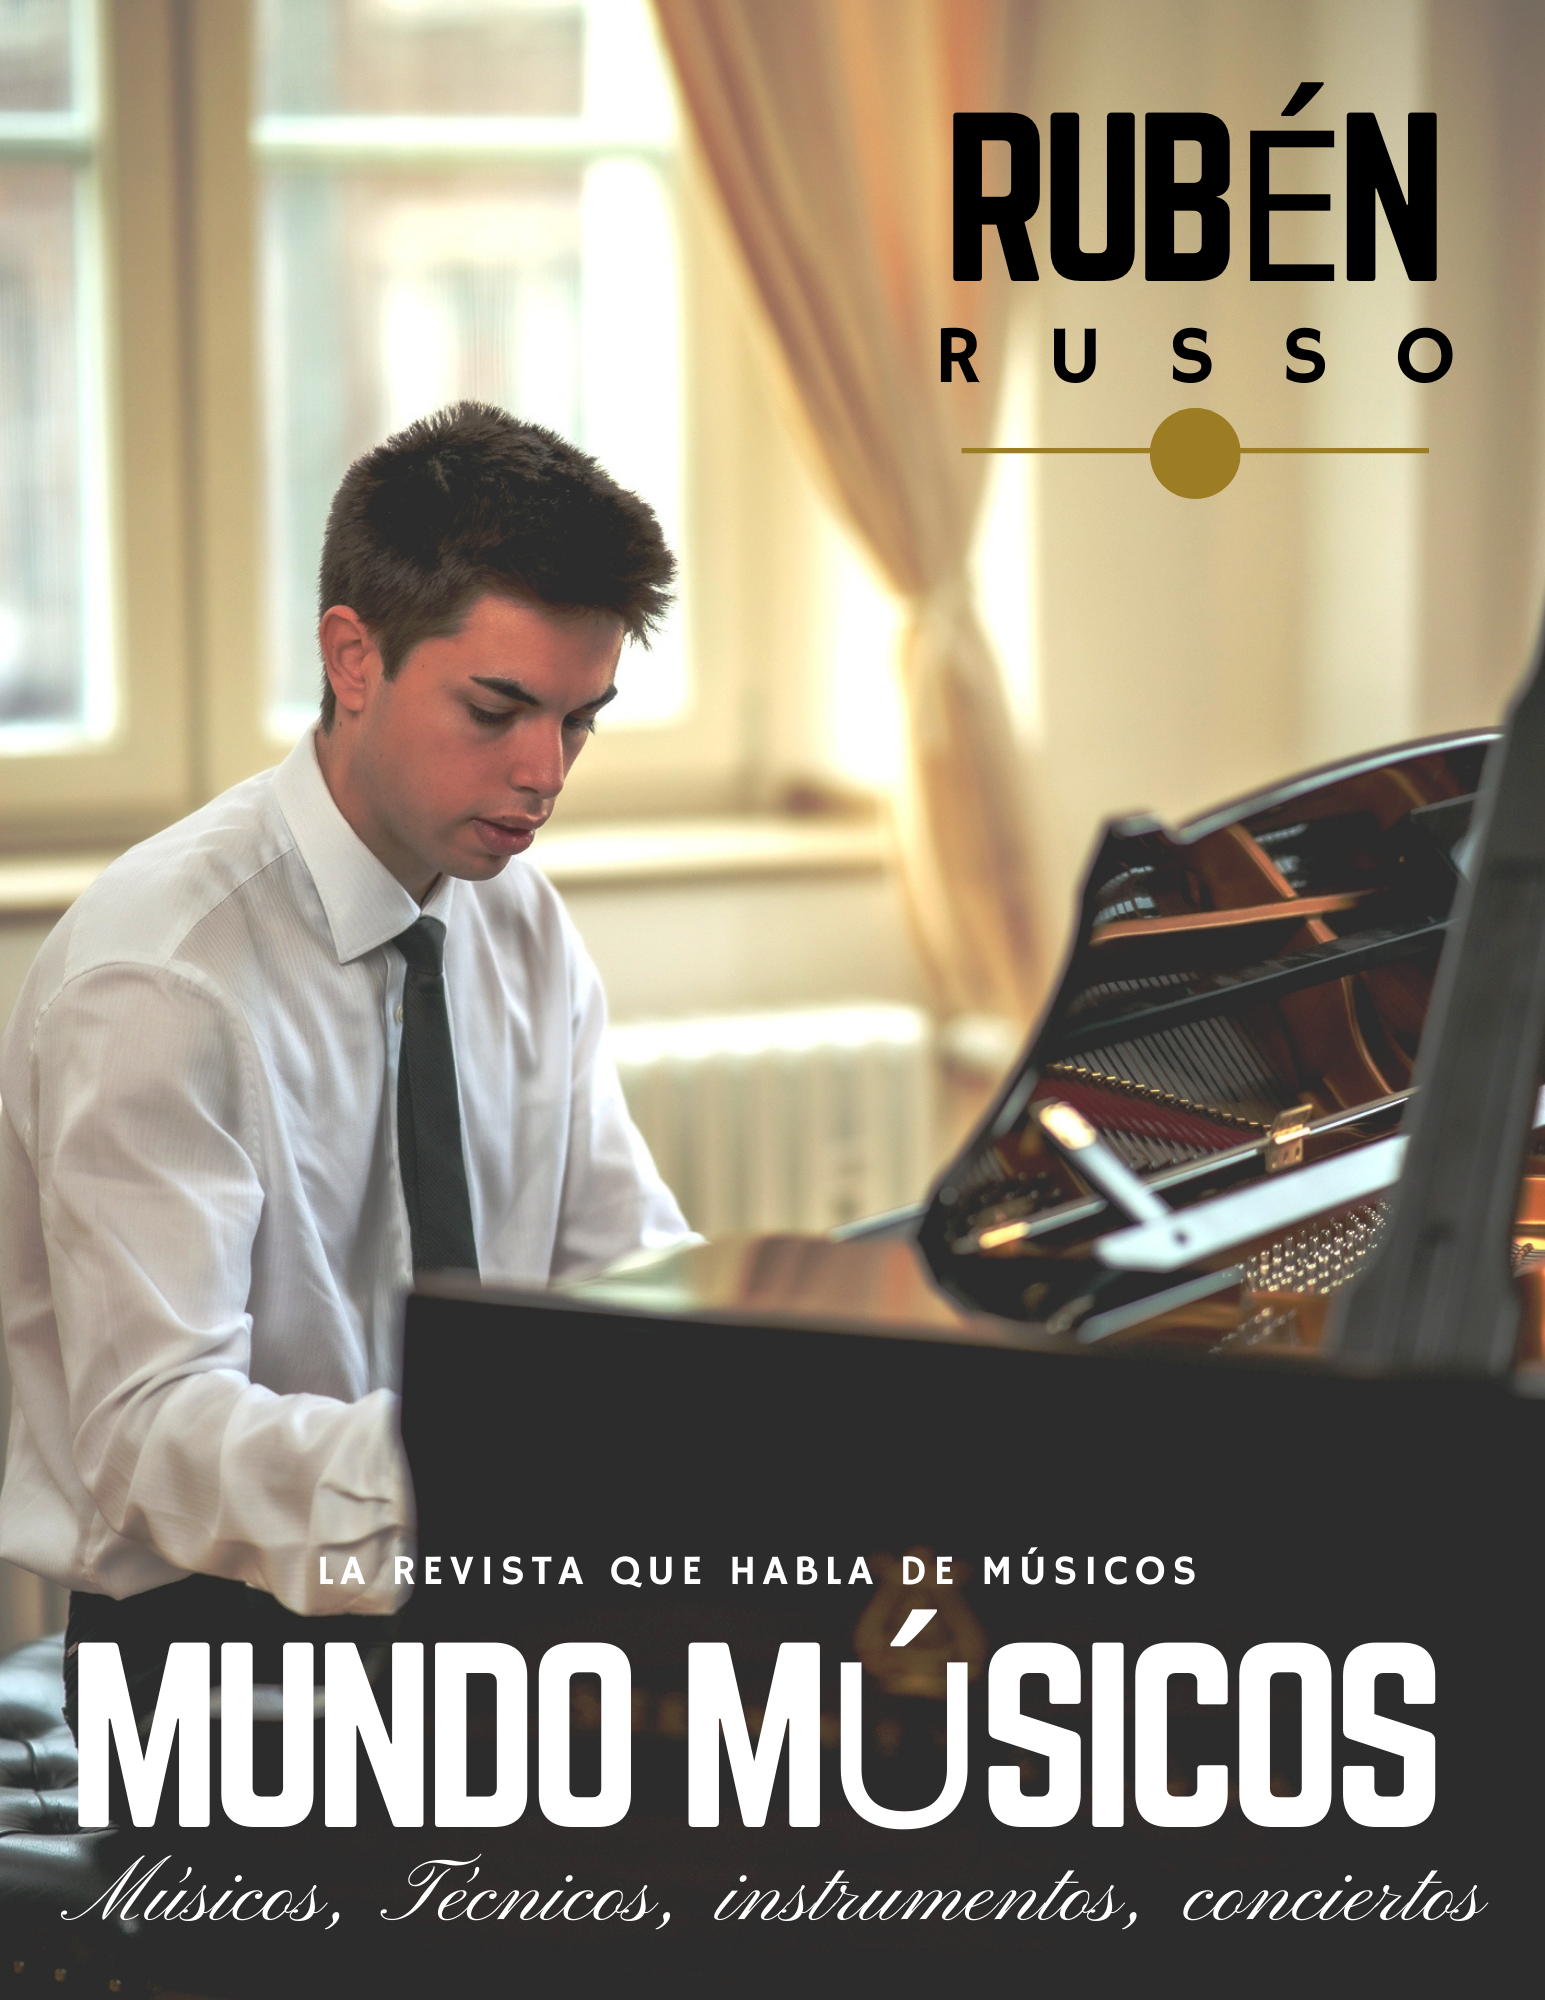 Rubén Russo Pianista